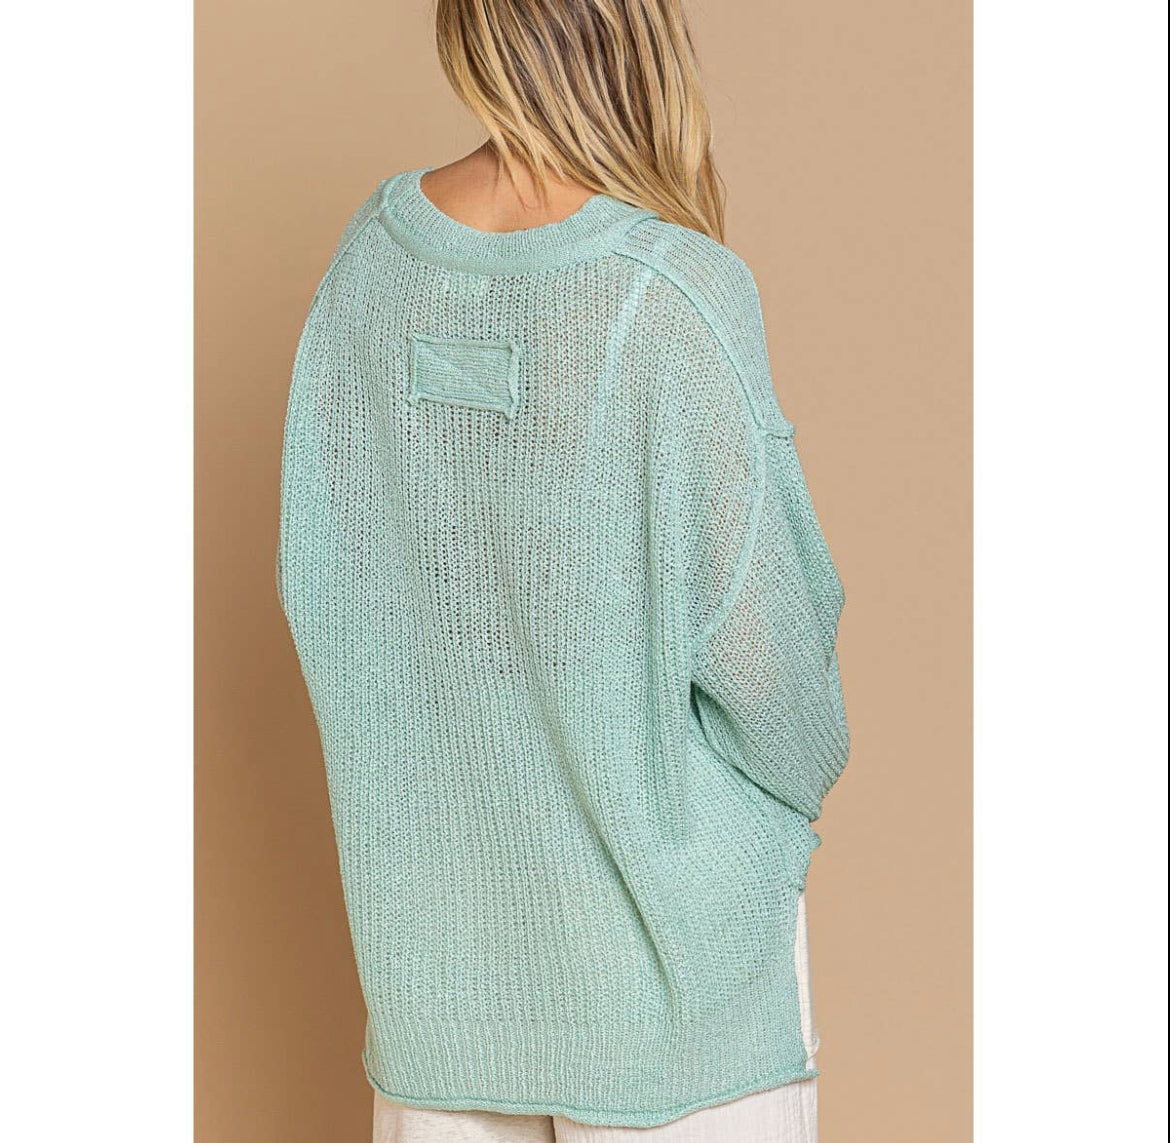 Aqua Thin Knit Sweater